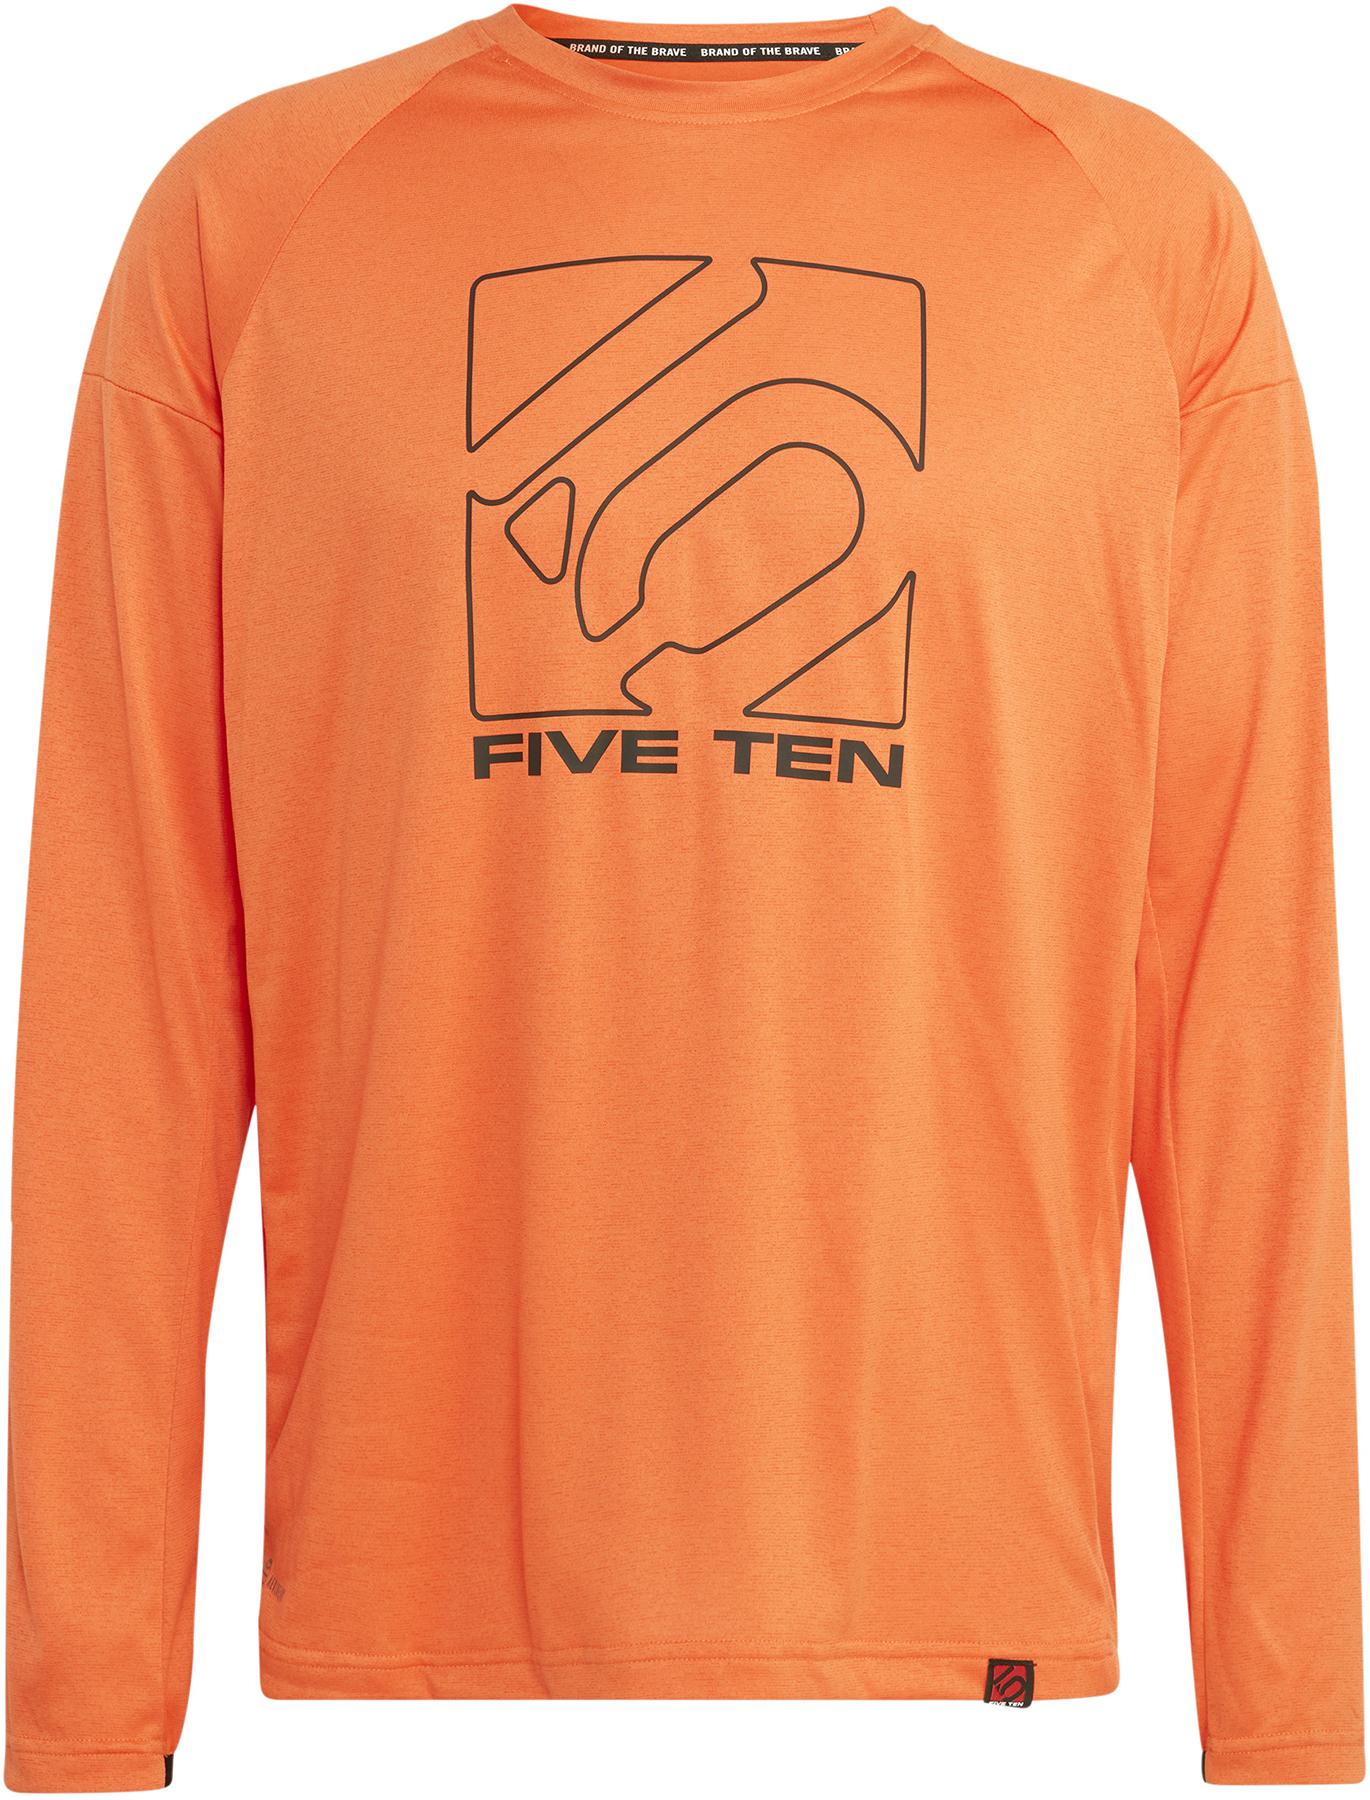 Five Ten Long Sleeve Jersey - Semi Impact Orange